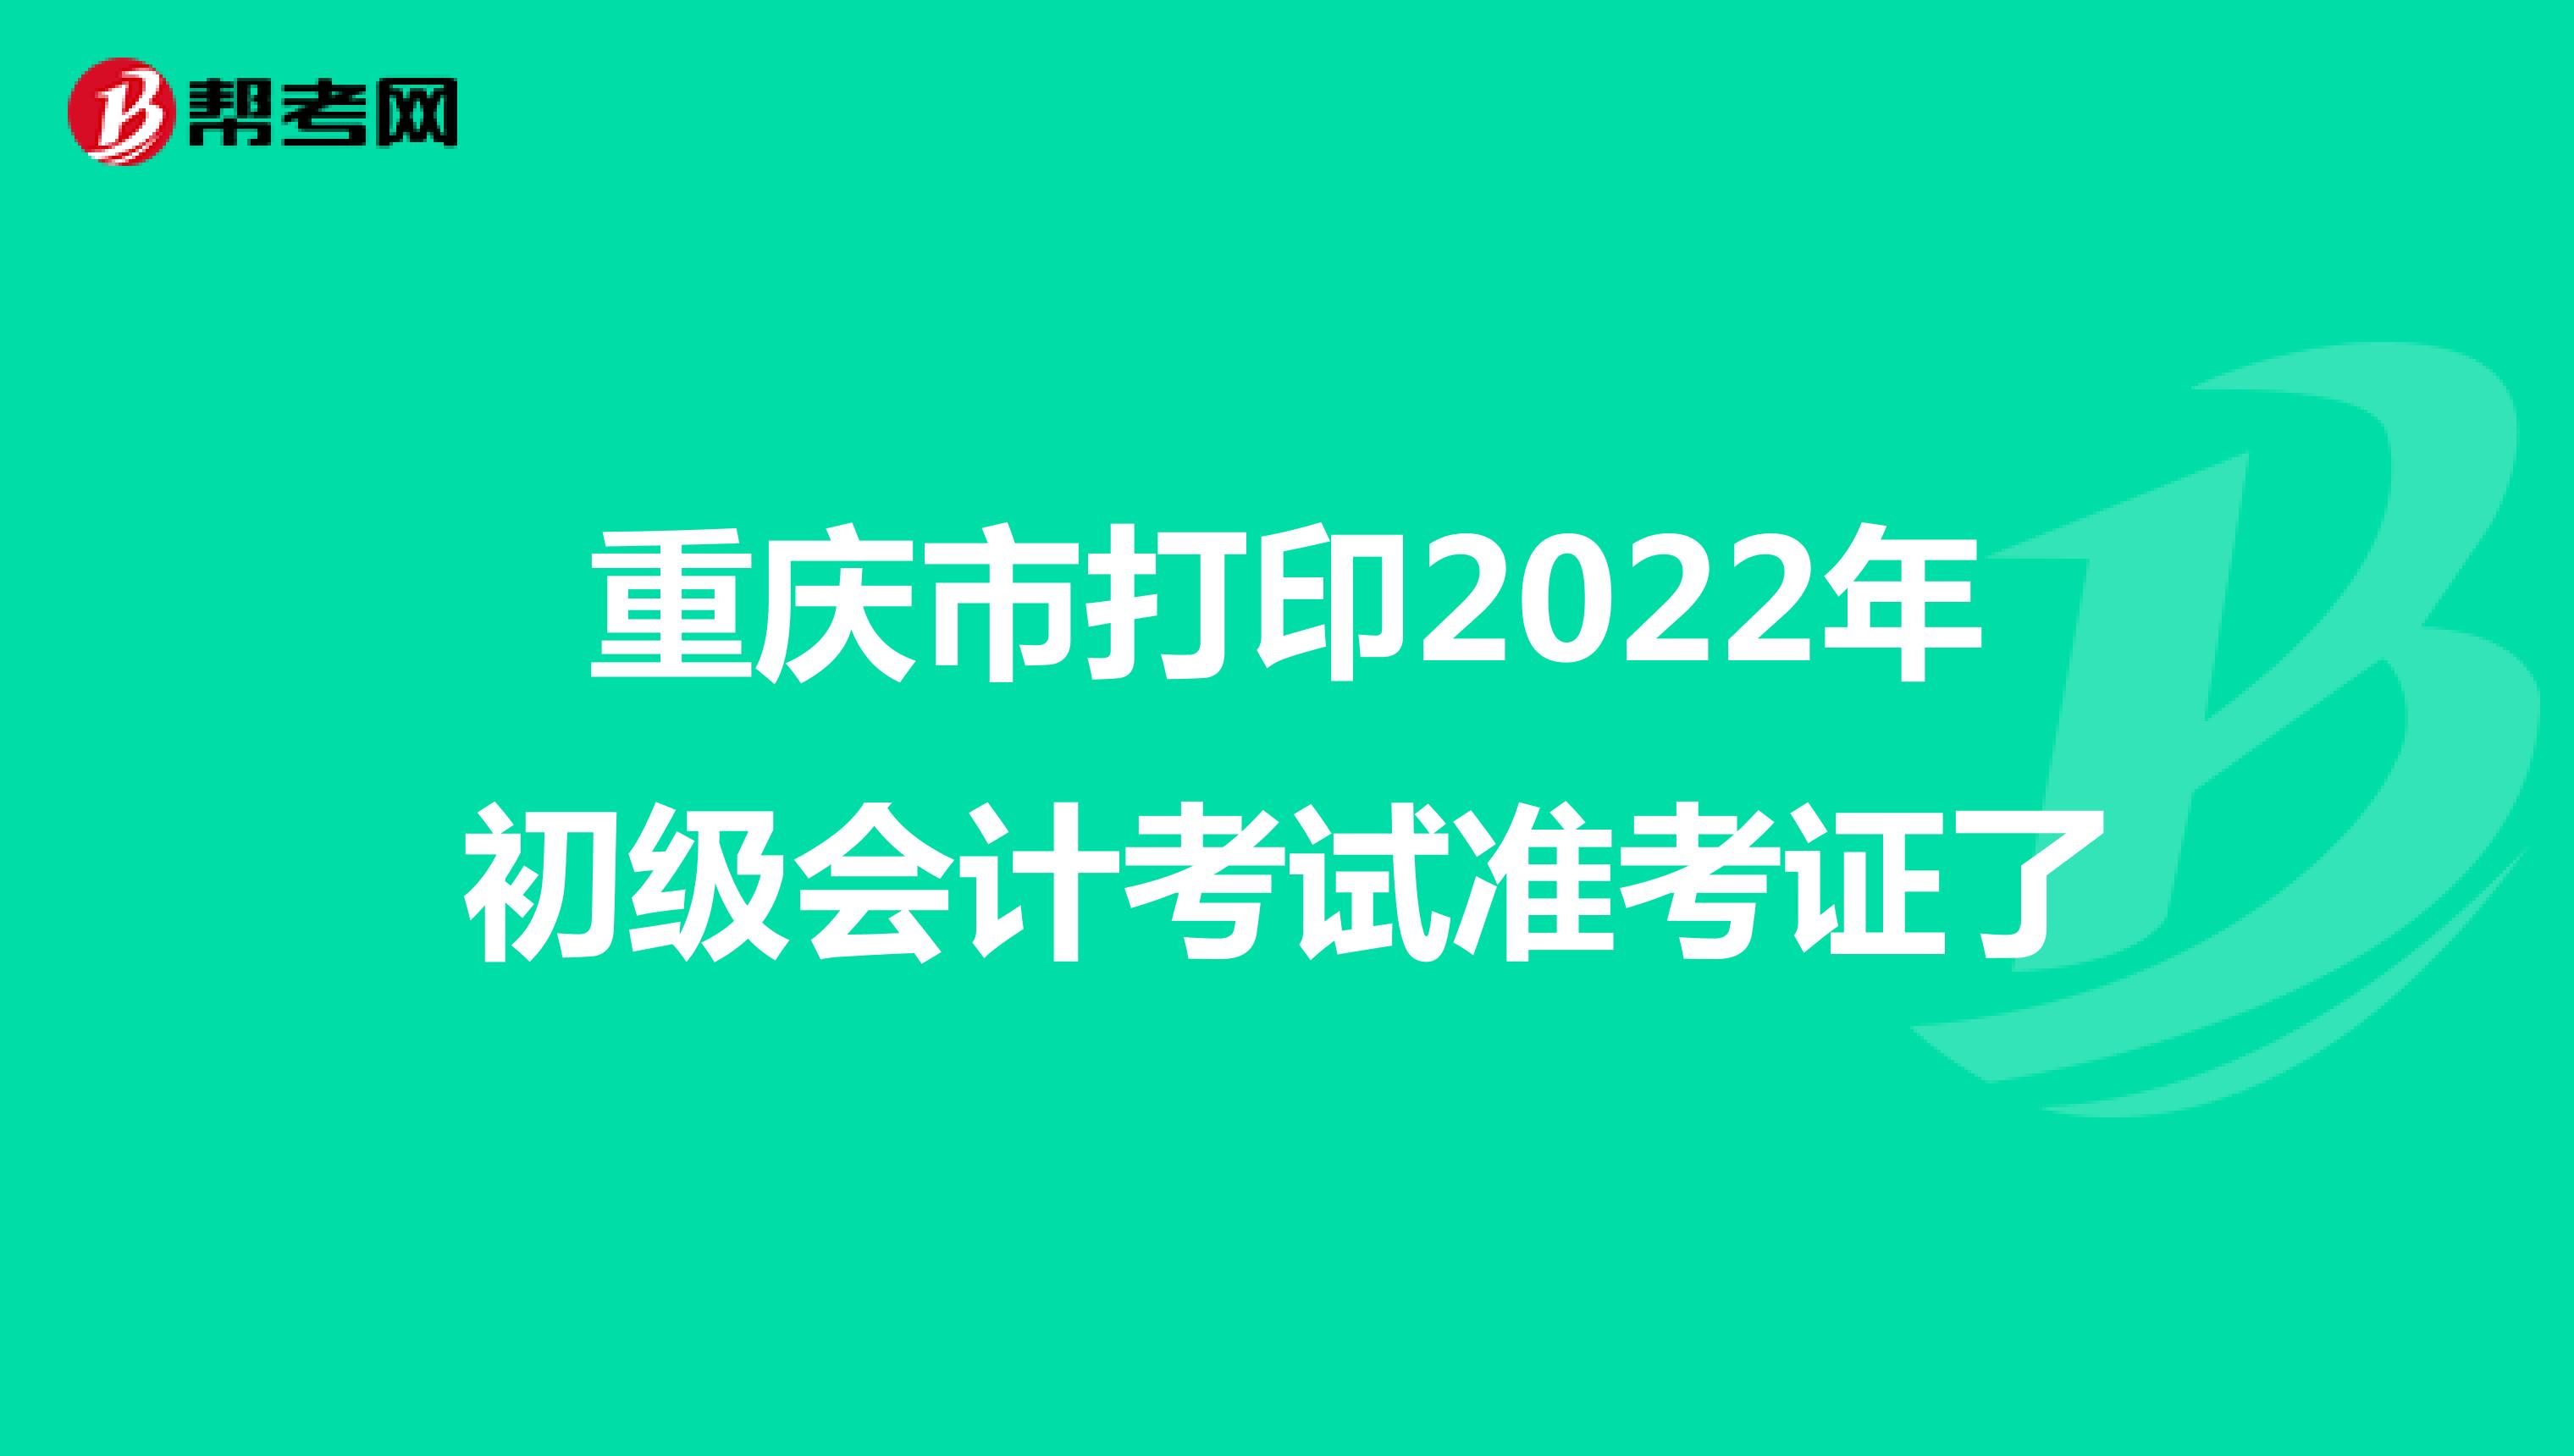 重庆市打印2022年初级会计考试准考证了